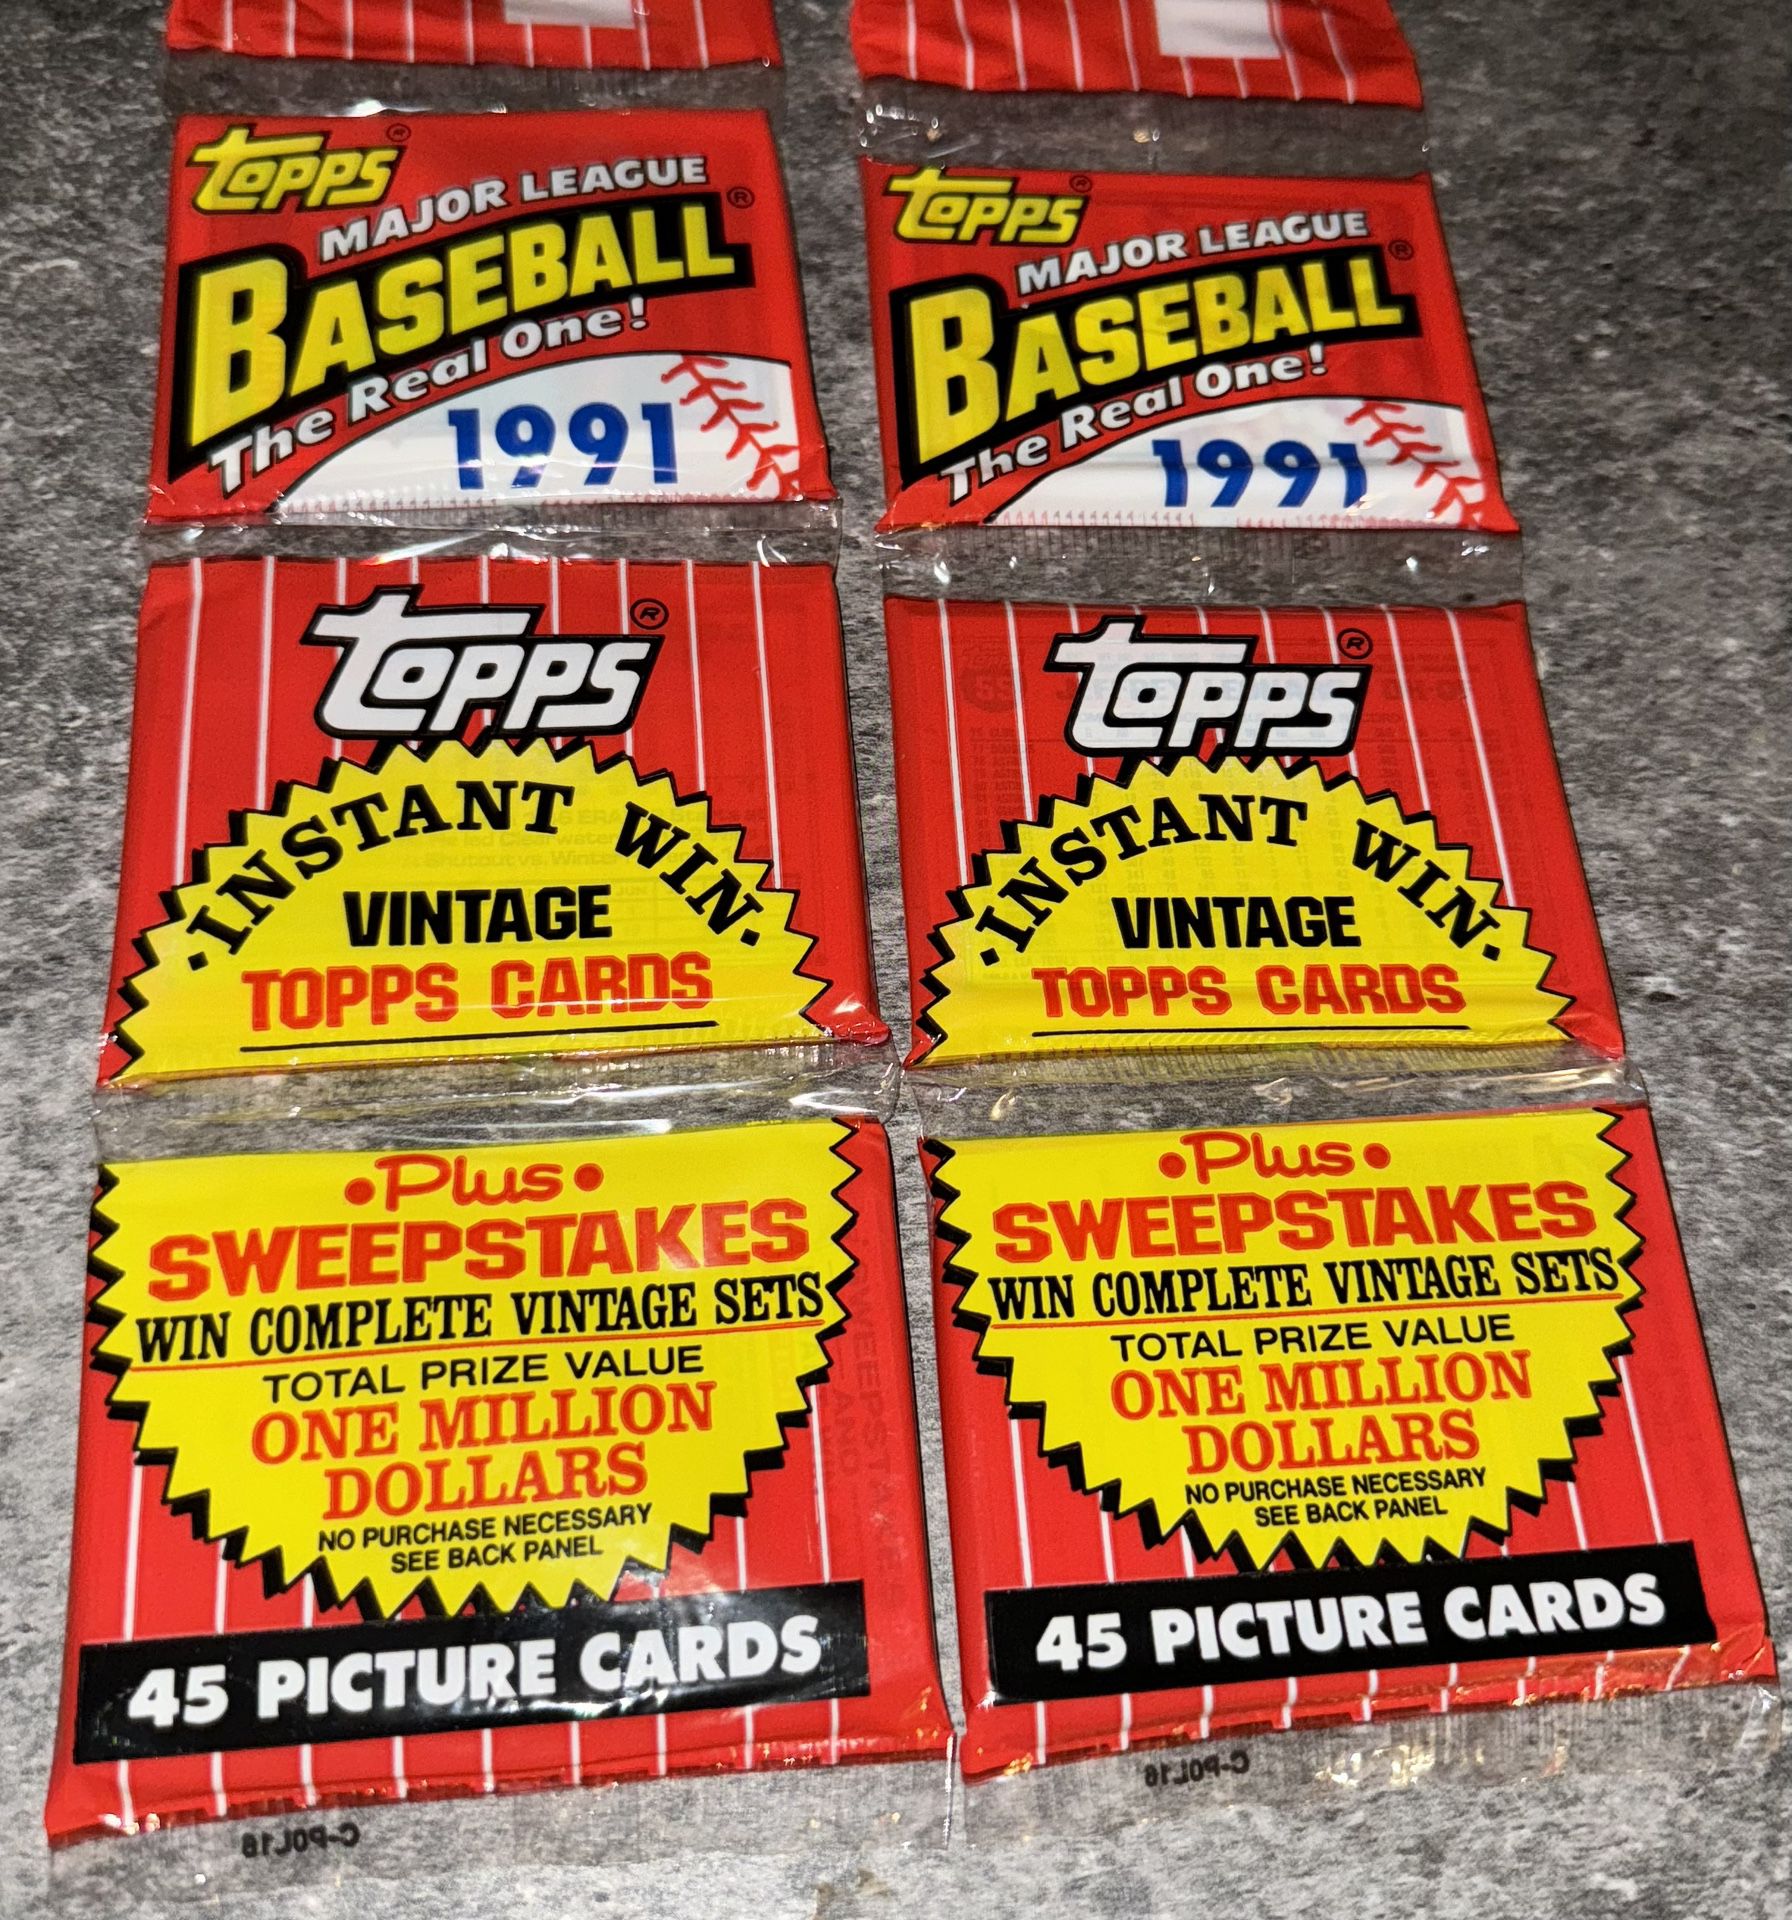 2 Rack Packs 1991 Topps Baseball Cards